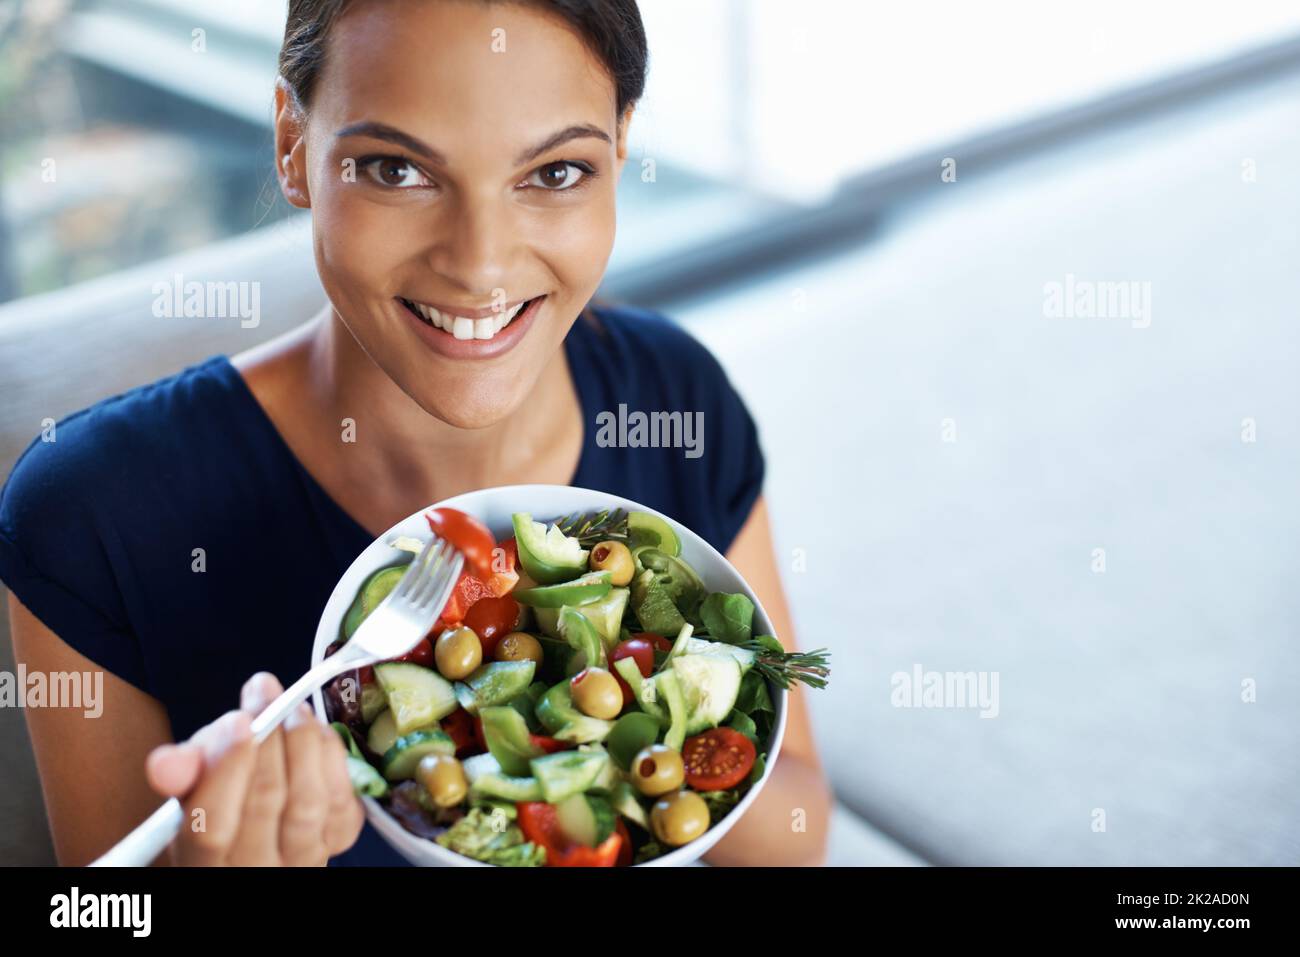 Comer una dieta equilibrada es tan importante. Vista superior de una hermosa mujer joven disfrutando de una saludable ensalada en su casa. Foto de stock